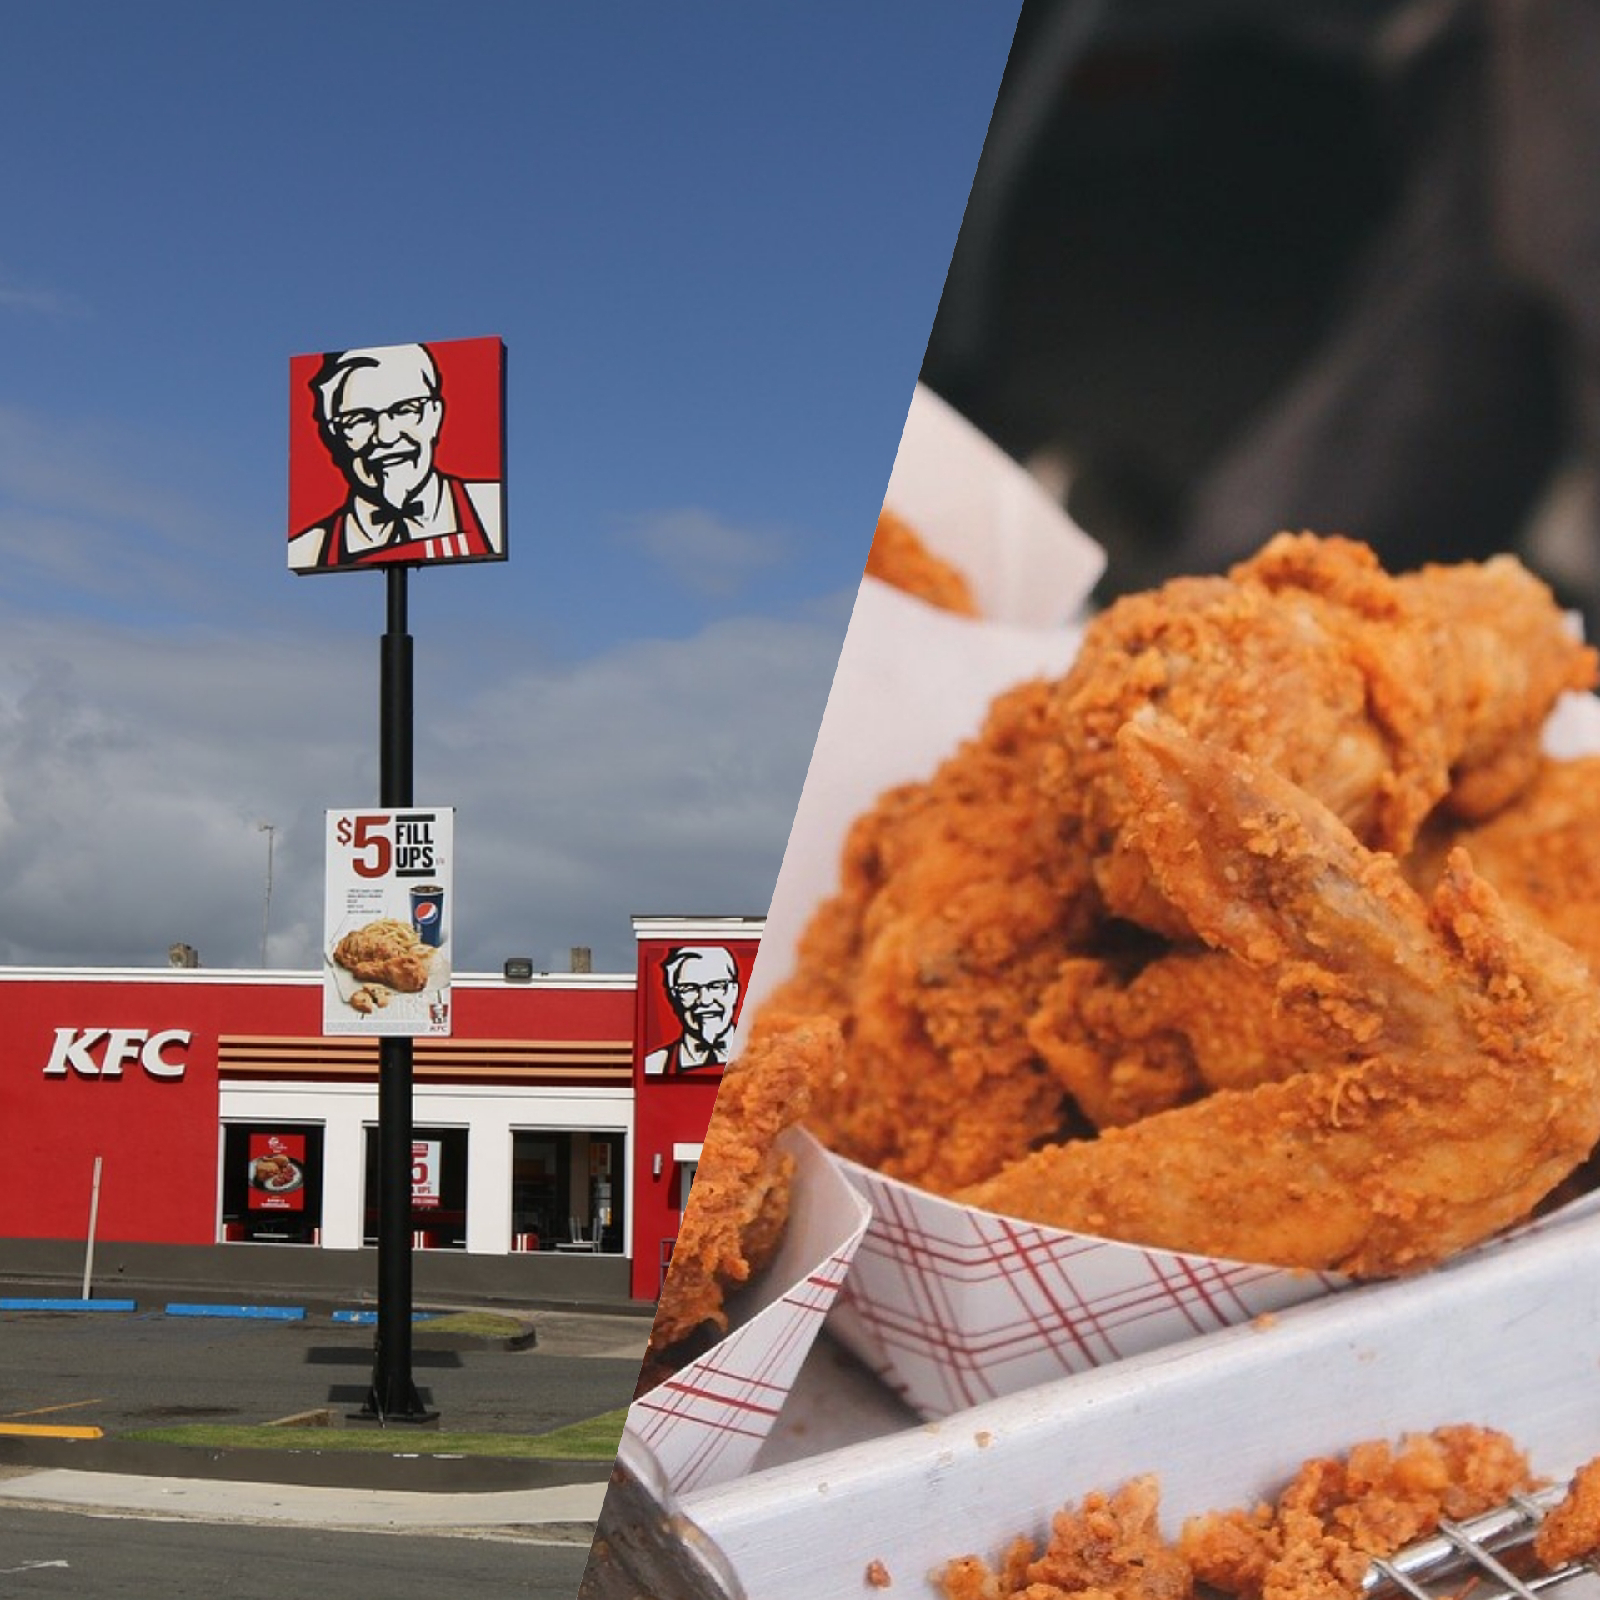 KFC revela receta original de su famoso pollo frito (por error) » TodoNorte  | Noticias, Directorio, Restaurantes, Negocios, Tiendas, Clinicas,  Hospitales, Servicios para hogar, servicios automotriz y más.